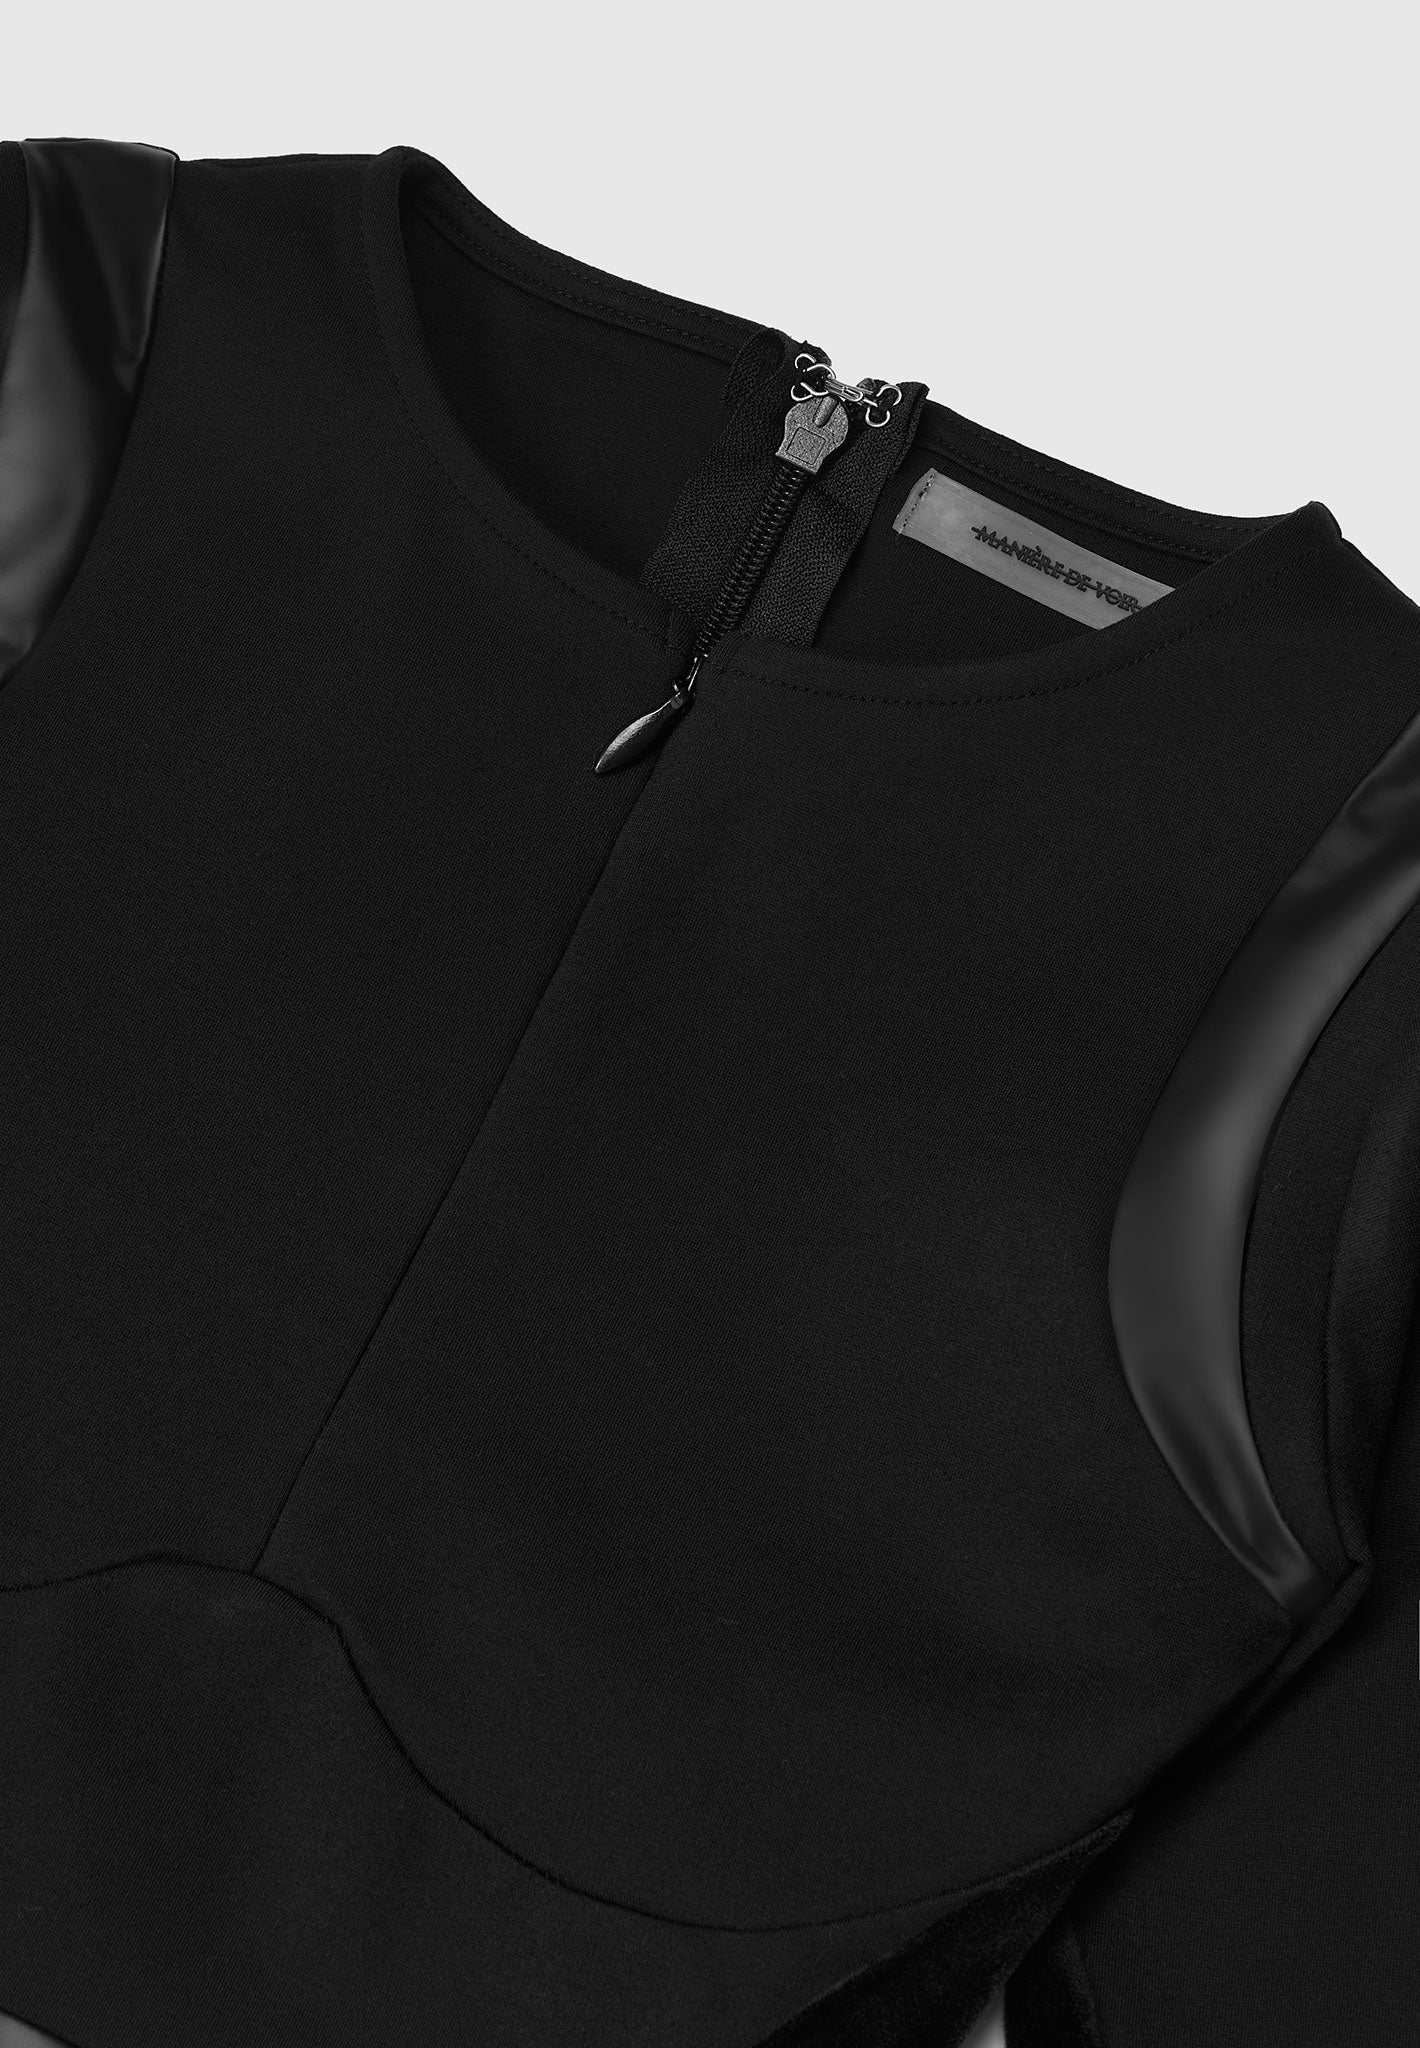 vegan-leather-bandage-contour-jumpsuit-black